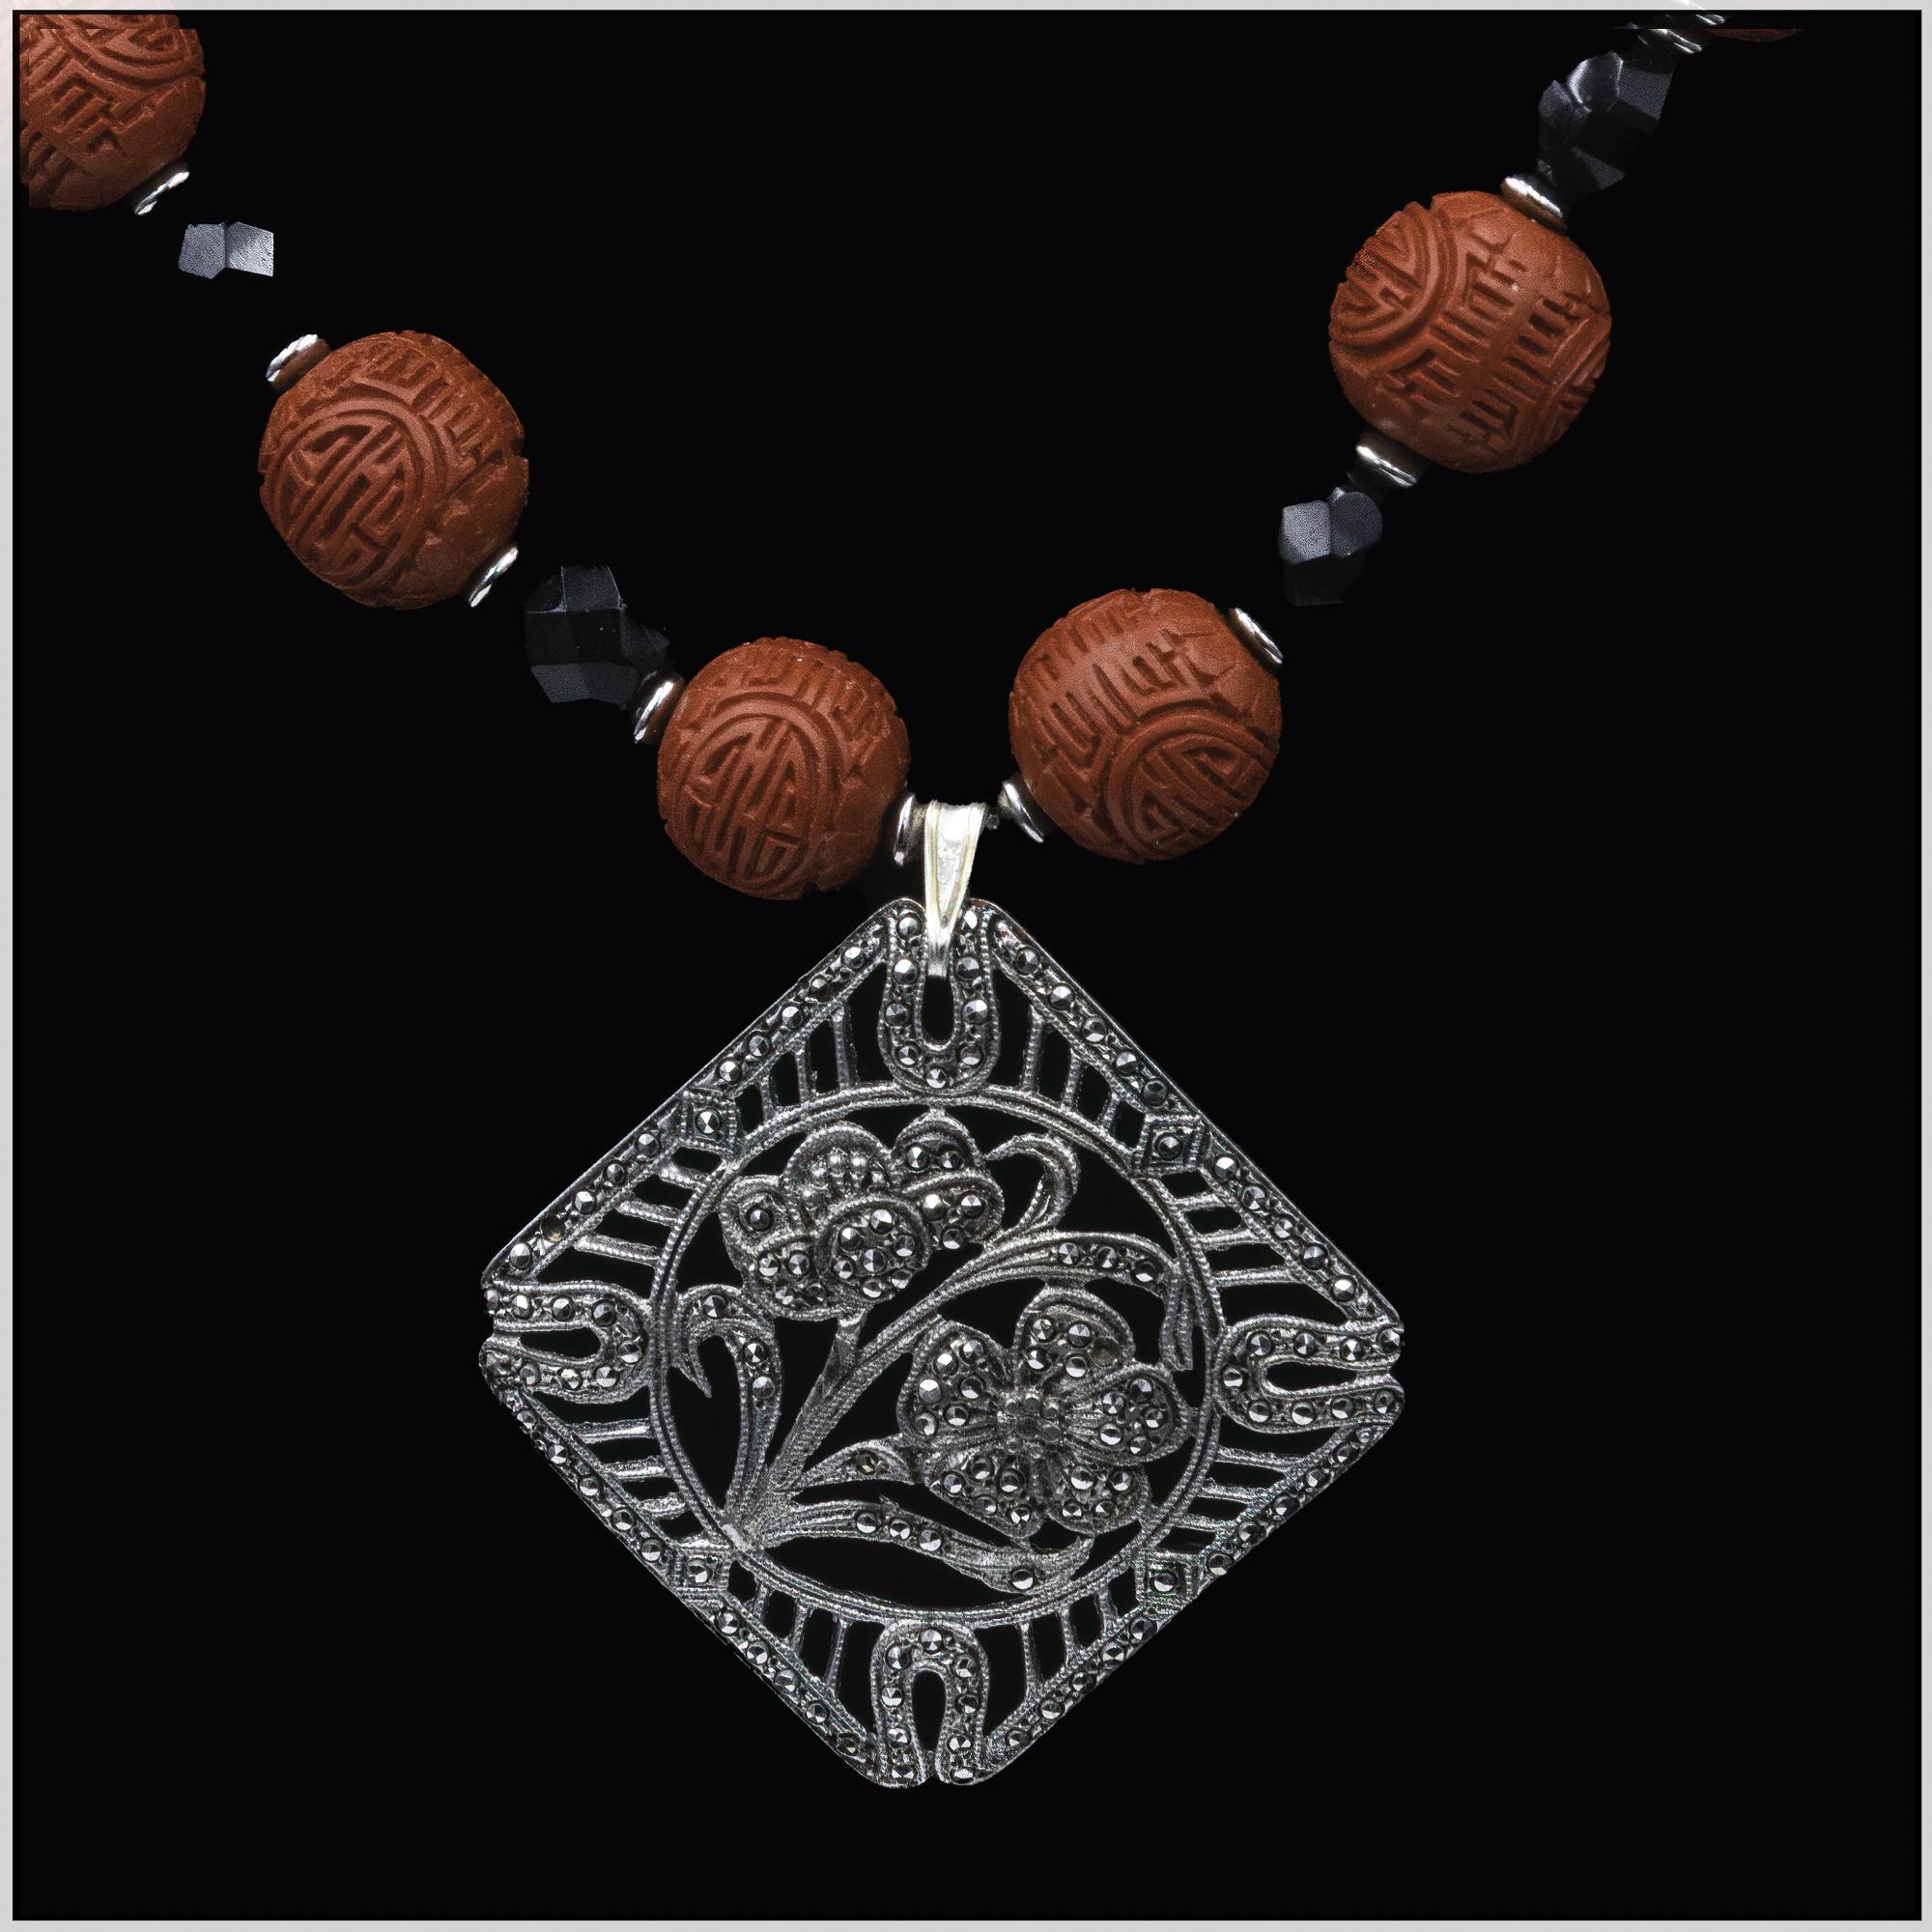 Pendentif vintage en argent et cinabre chinois, avec des perles de cinabre rouge, d'onyx noir et d'argent, ce collier unique, fait à la main par Lorrain's Bijoux, est proposé.